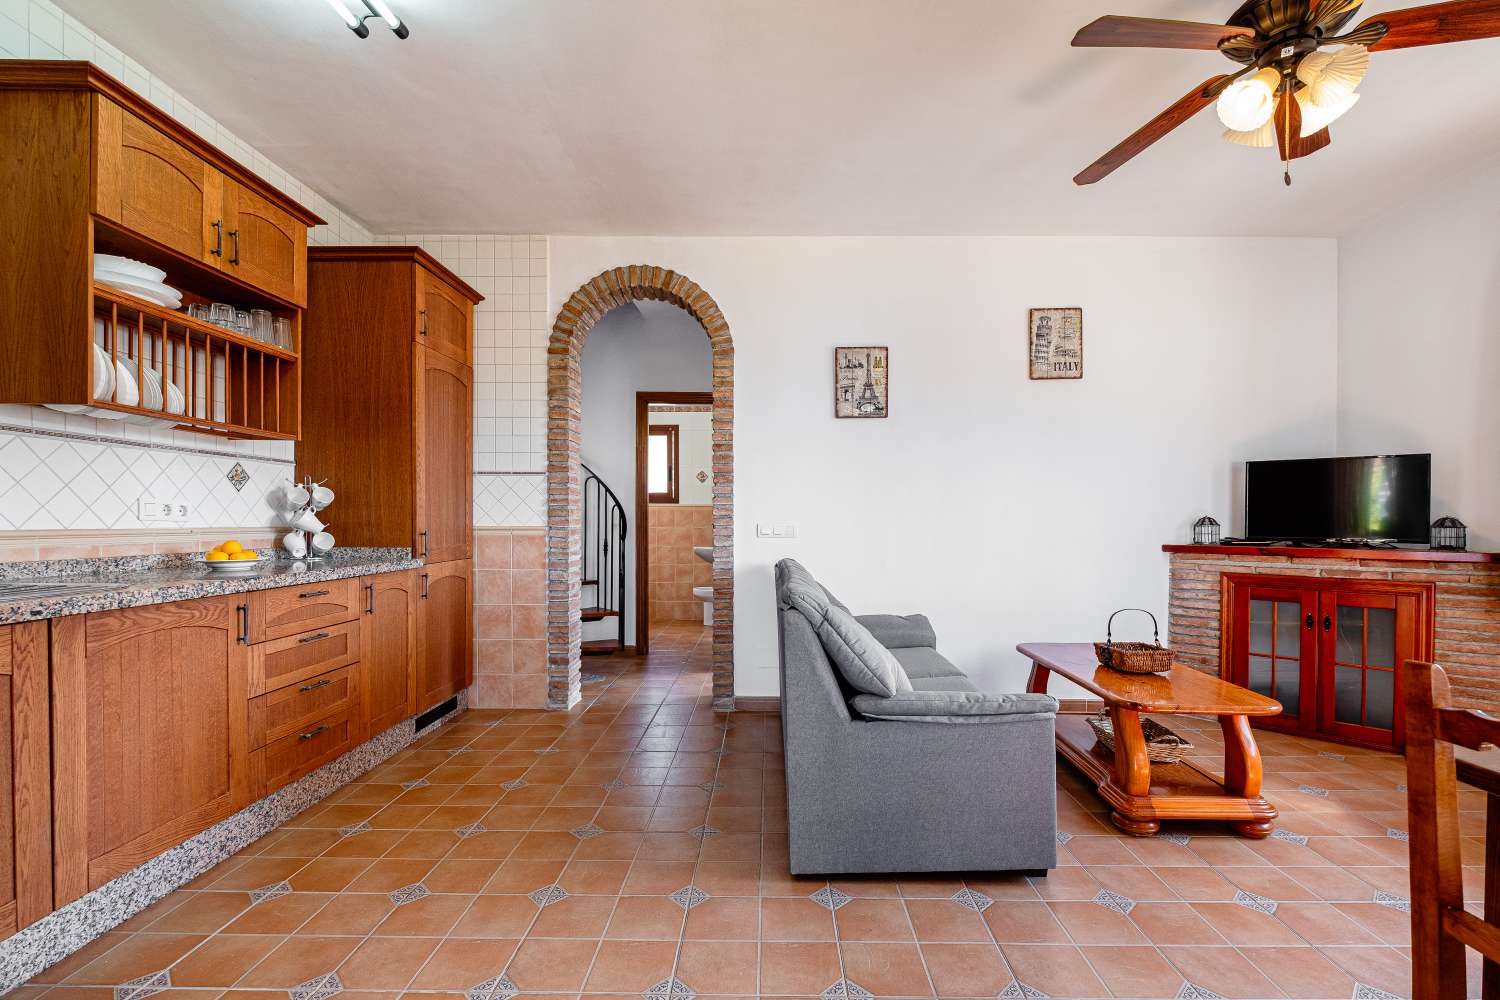 Wunderschönes Landhaus zwischen Frigiliana und Torrox, in der Gegend des Hotels Los Caracoles